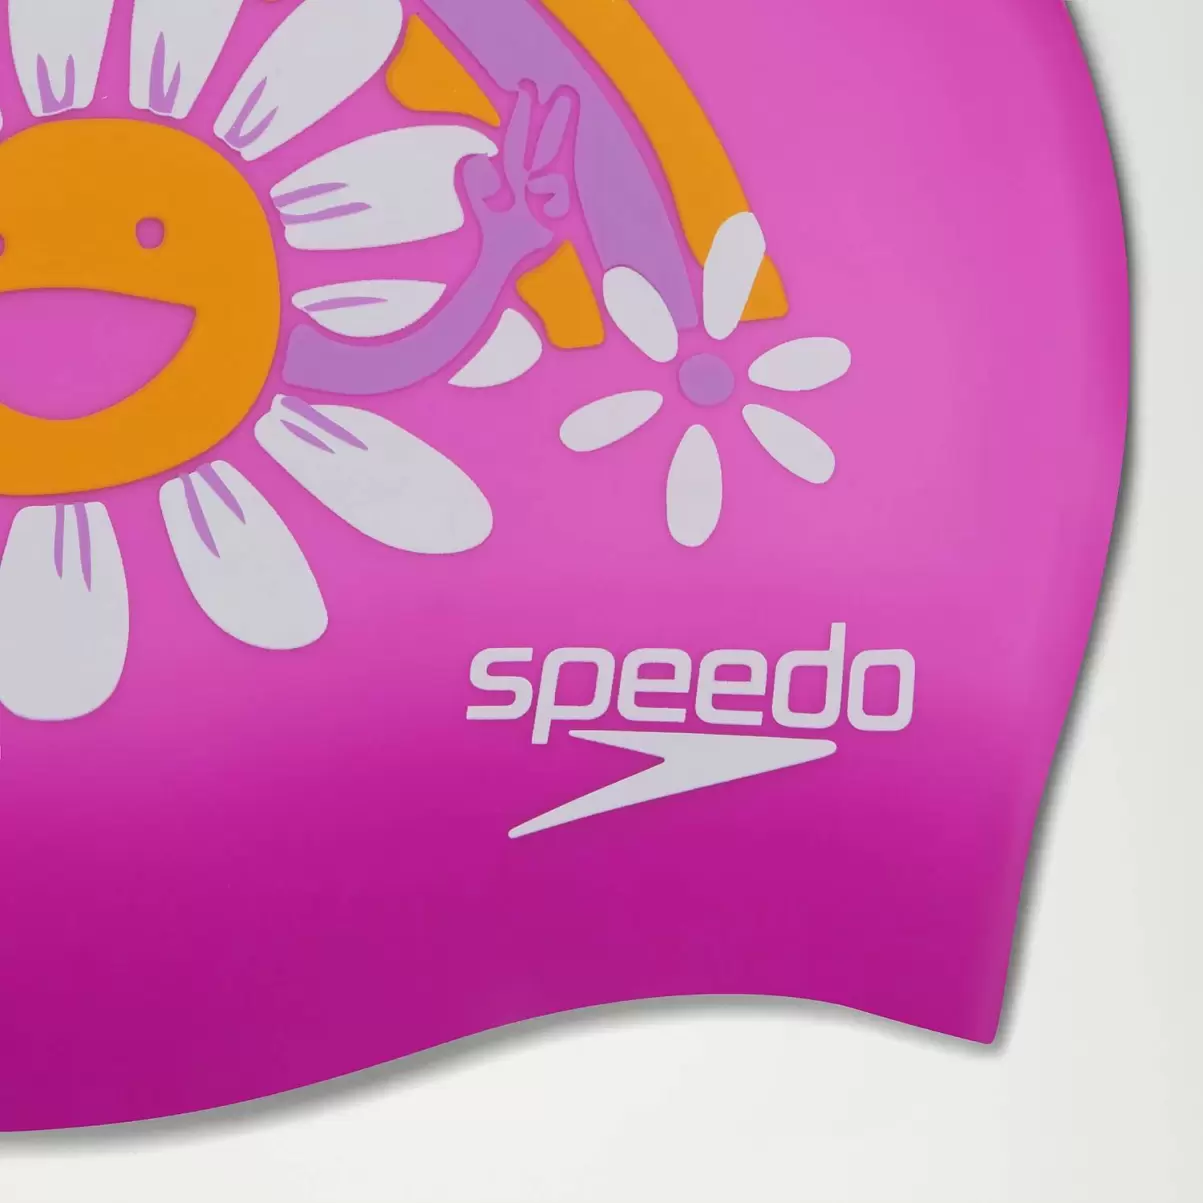 Damen Bedruckte Silikonbadekappe Für Kinder Pink/Violett Speedo Schwimm Accessoires - 1